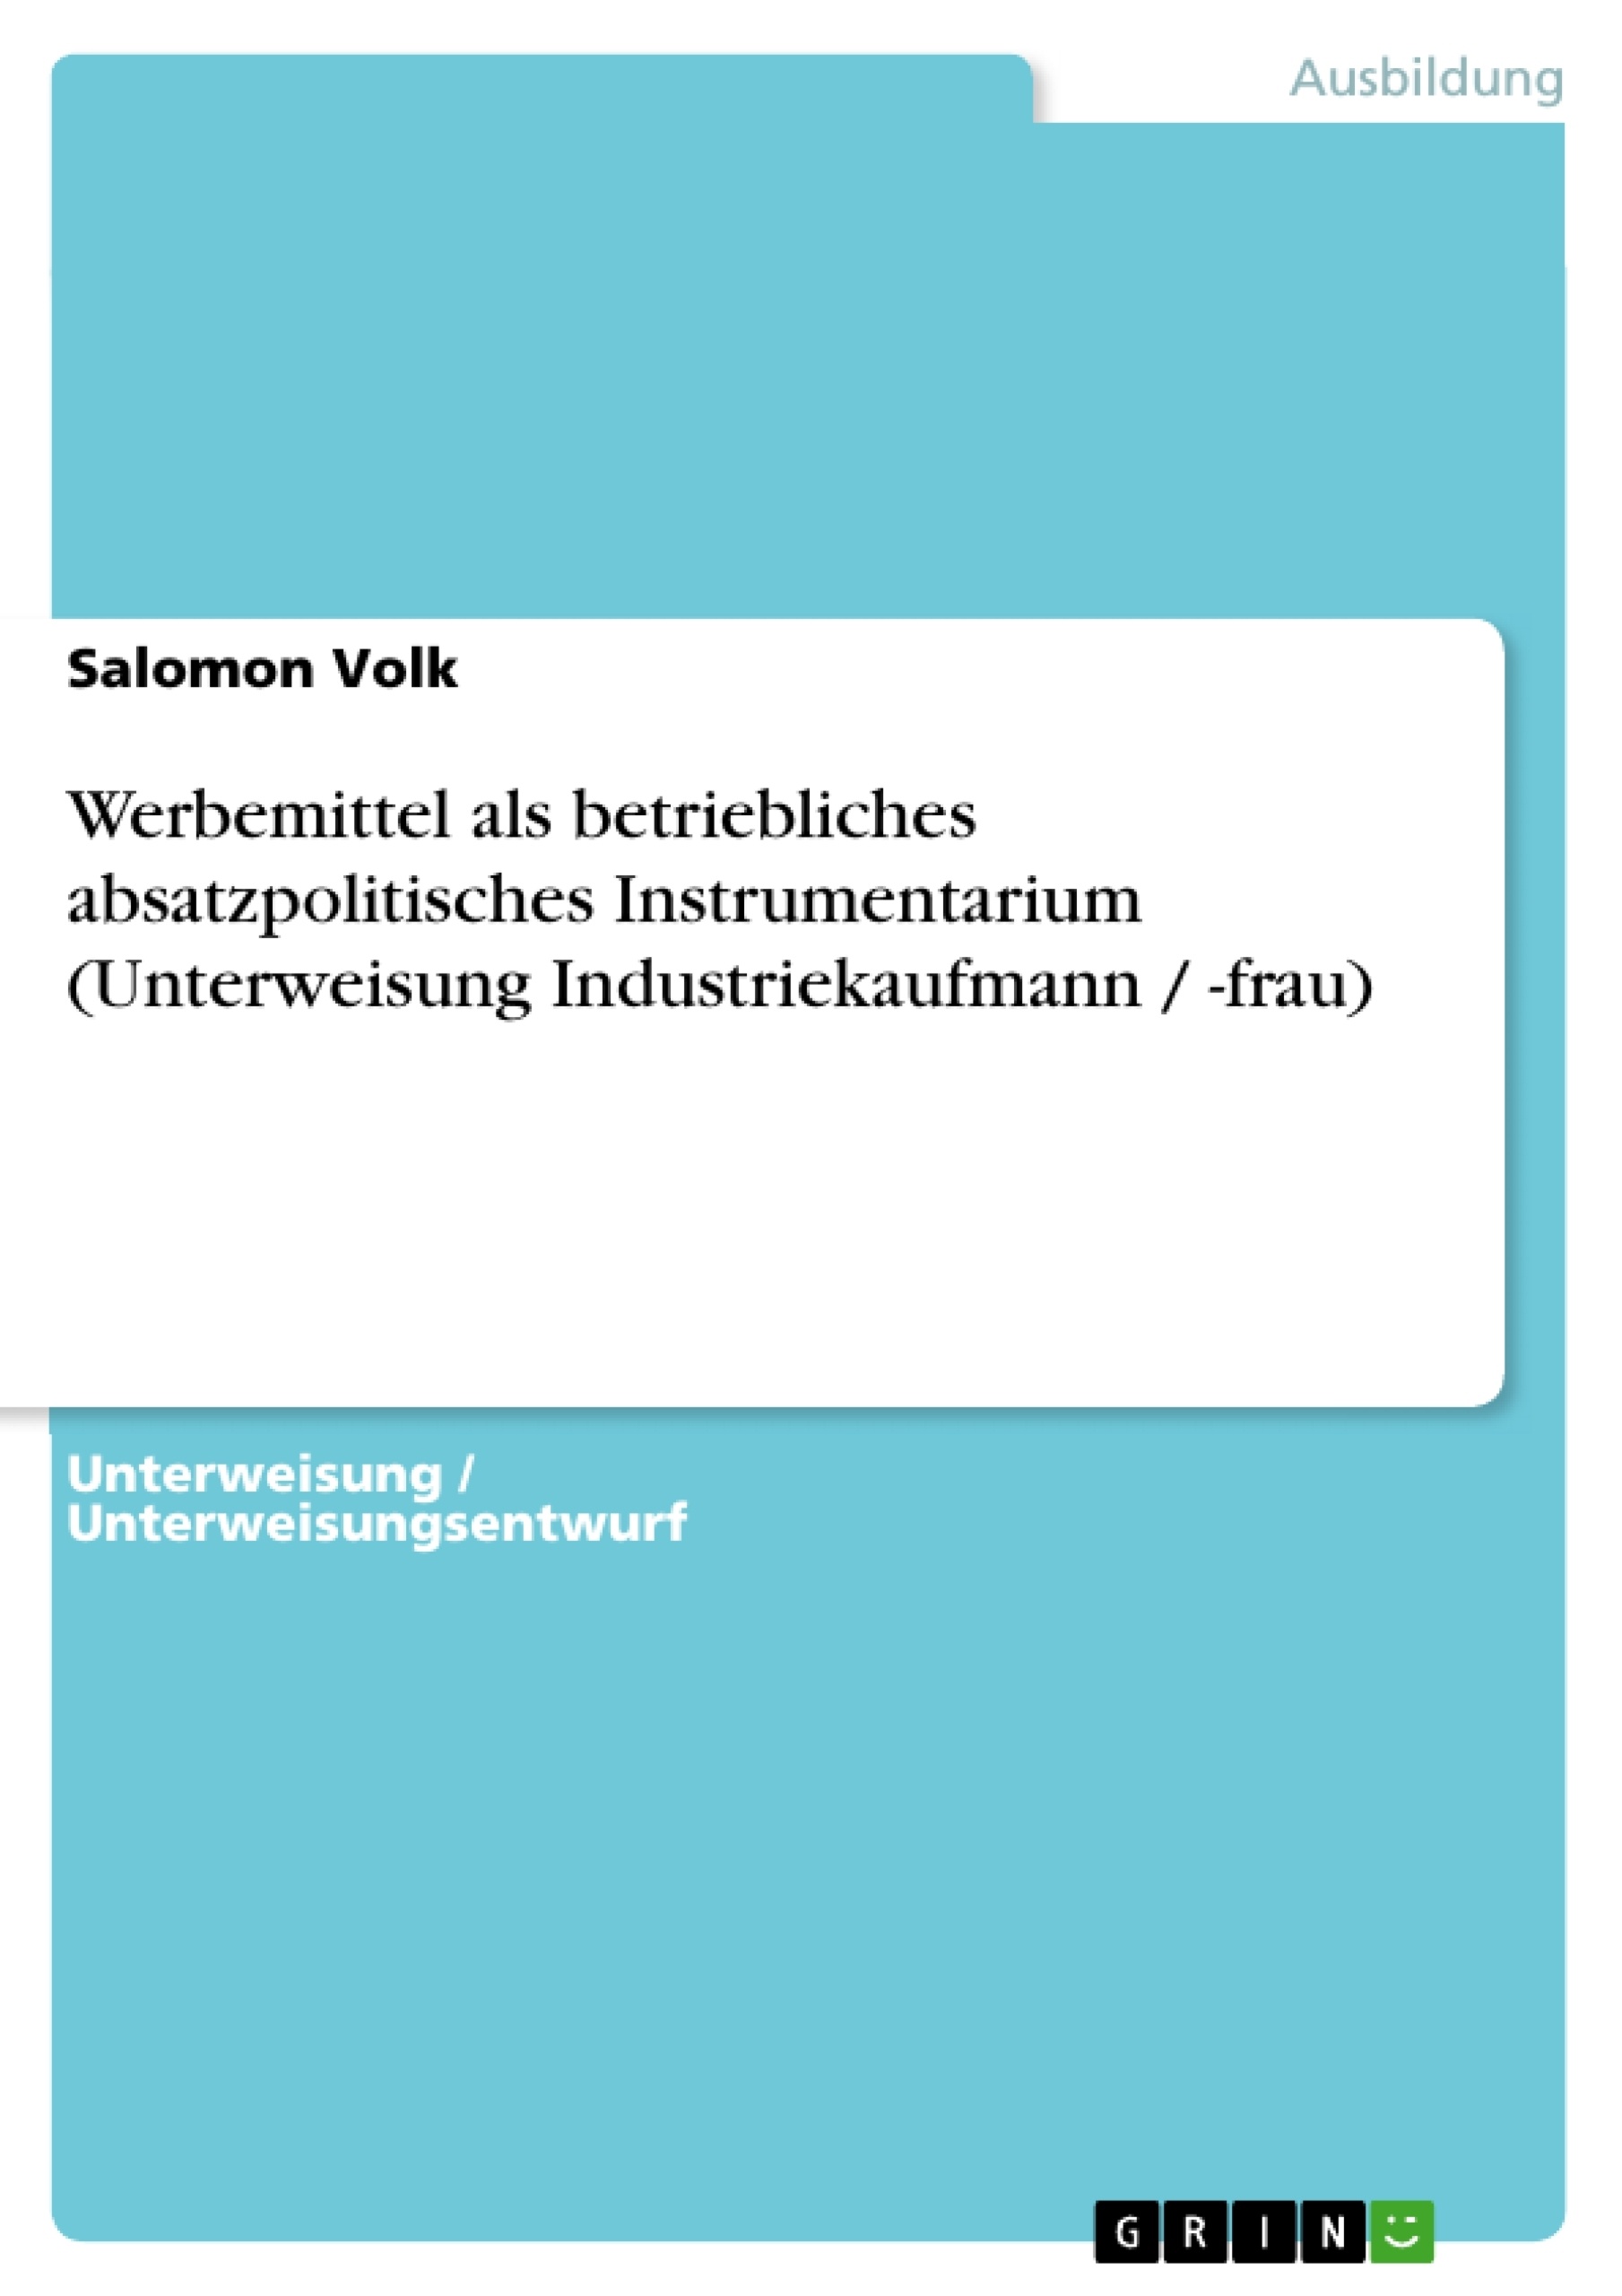 Title: Werbemittel als betriebliches absatzpolitisches  Instrumentarium (Unterweisung Industriekaufmann / -frau)